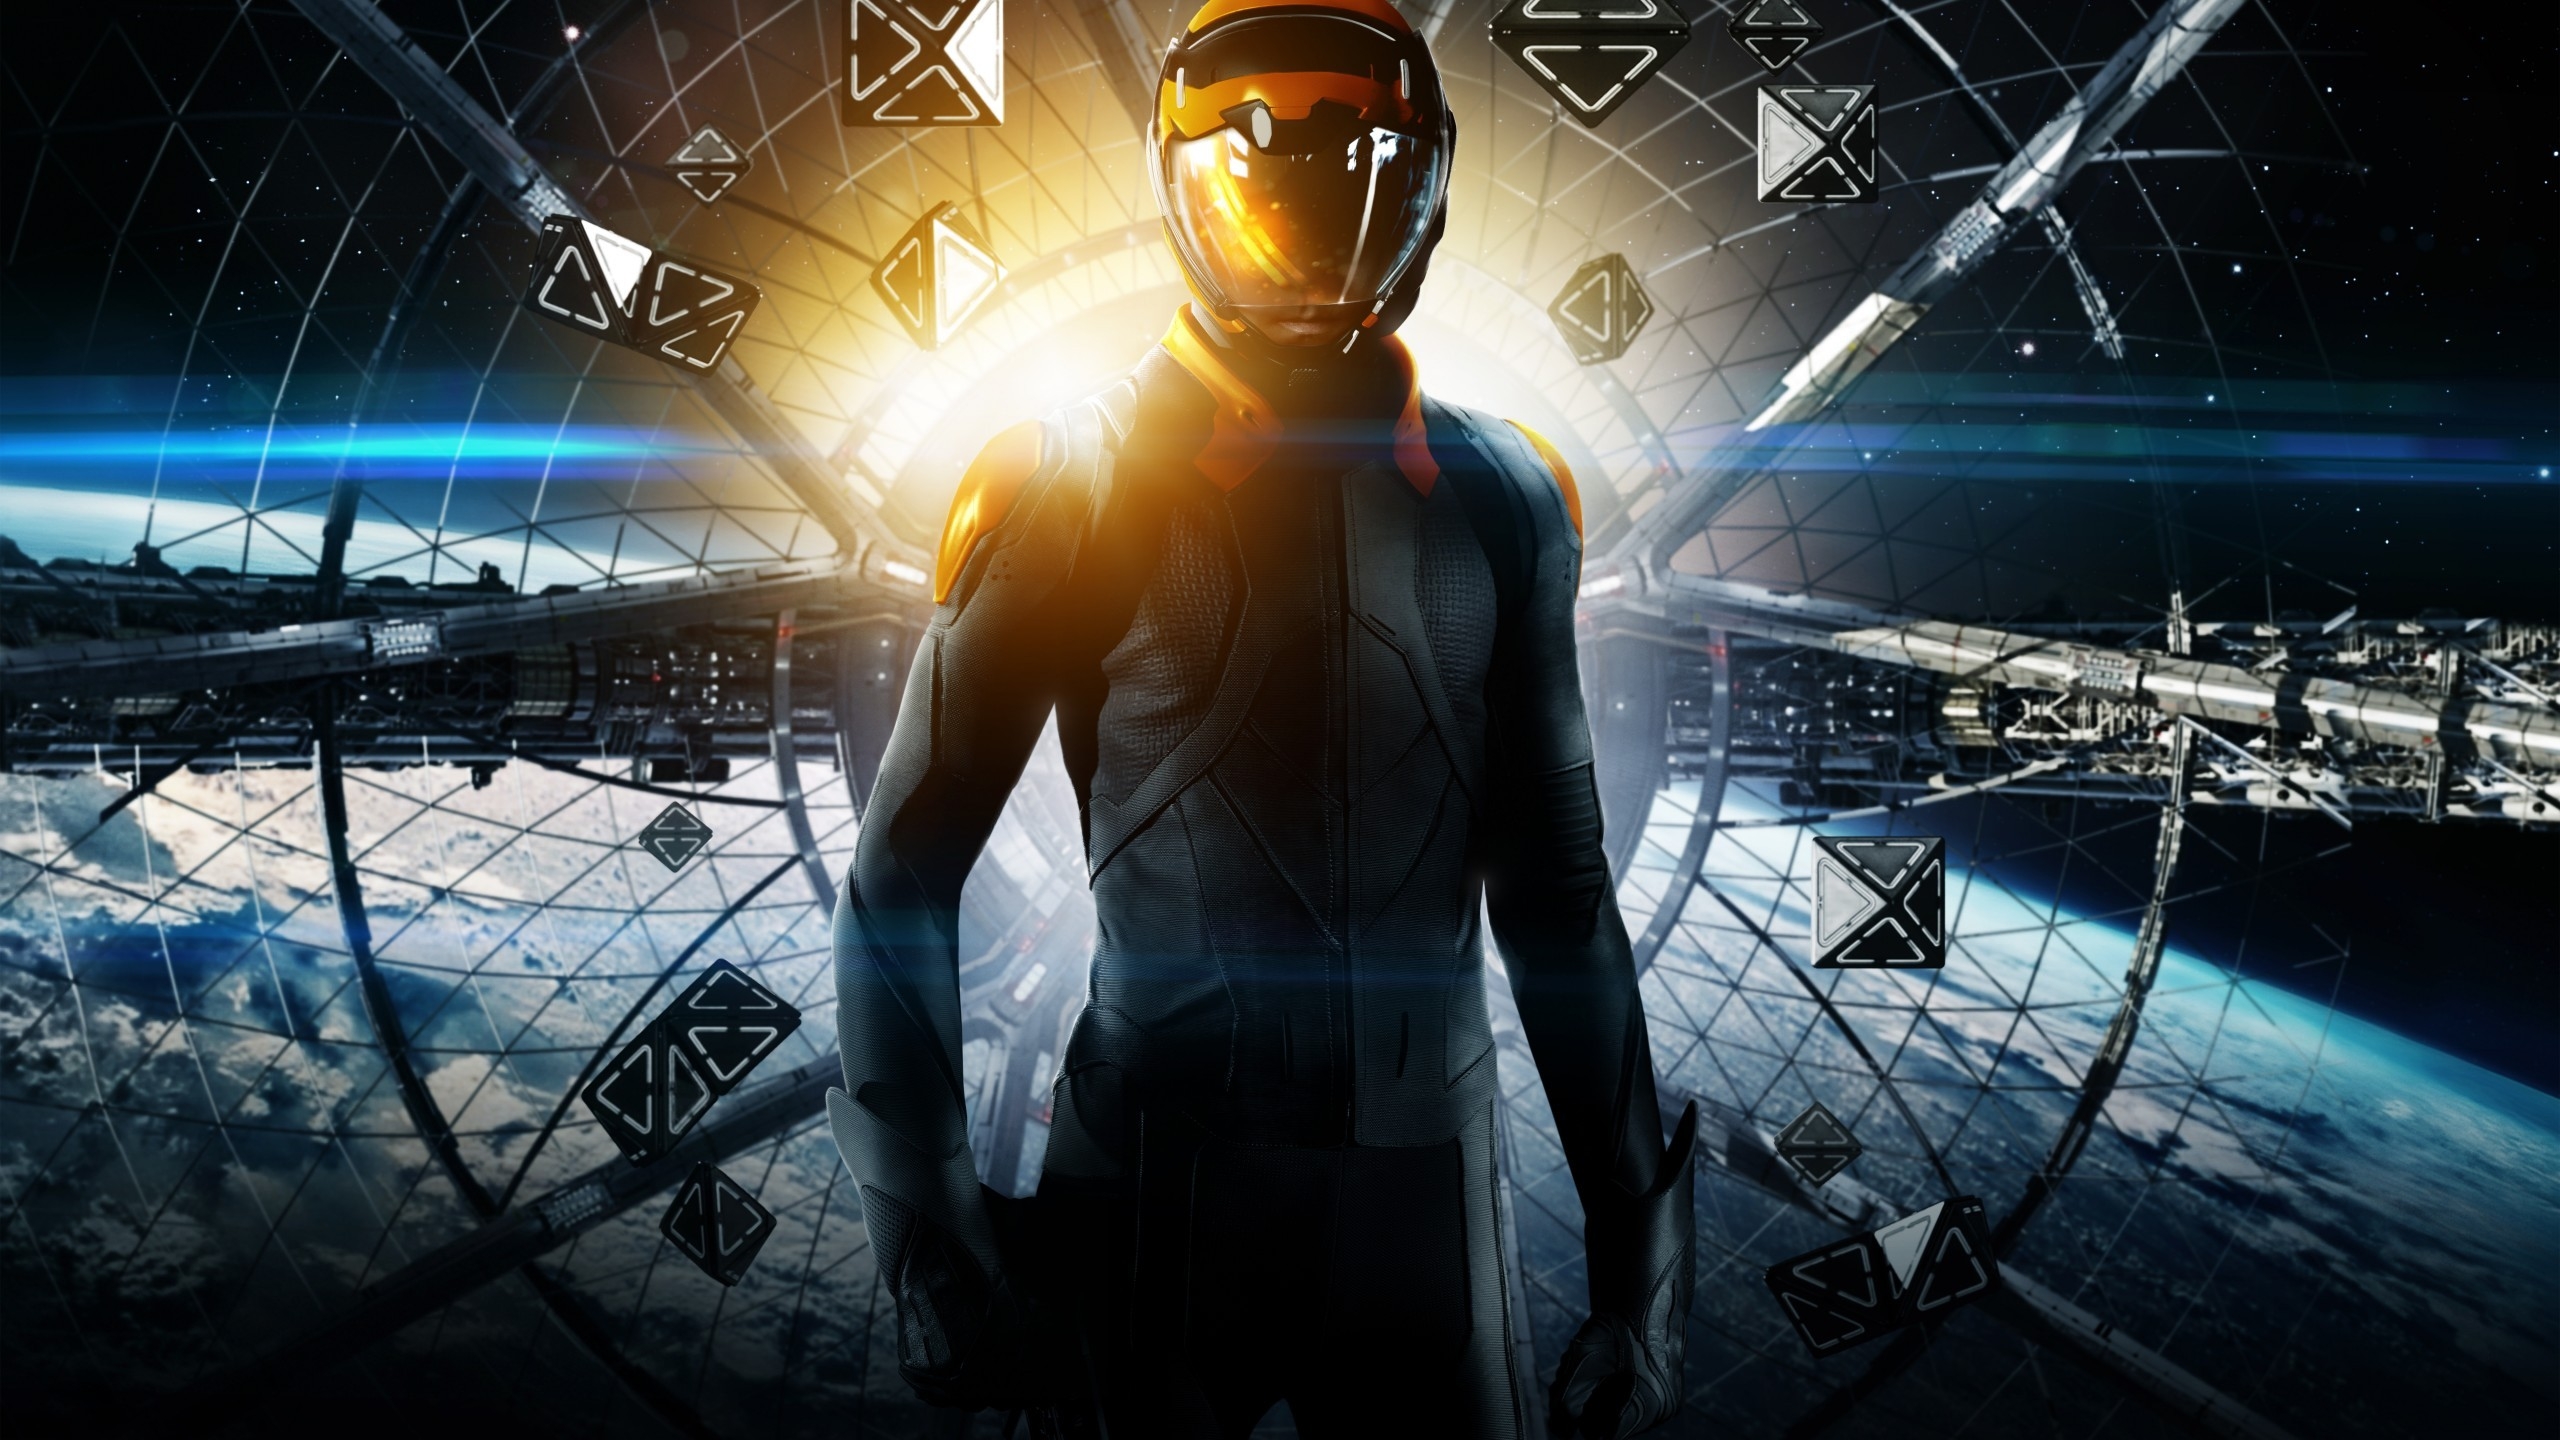 Ender's Game Poster for 2560x1440 HDTV resolution